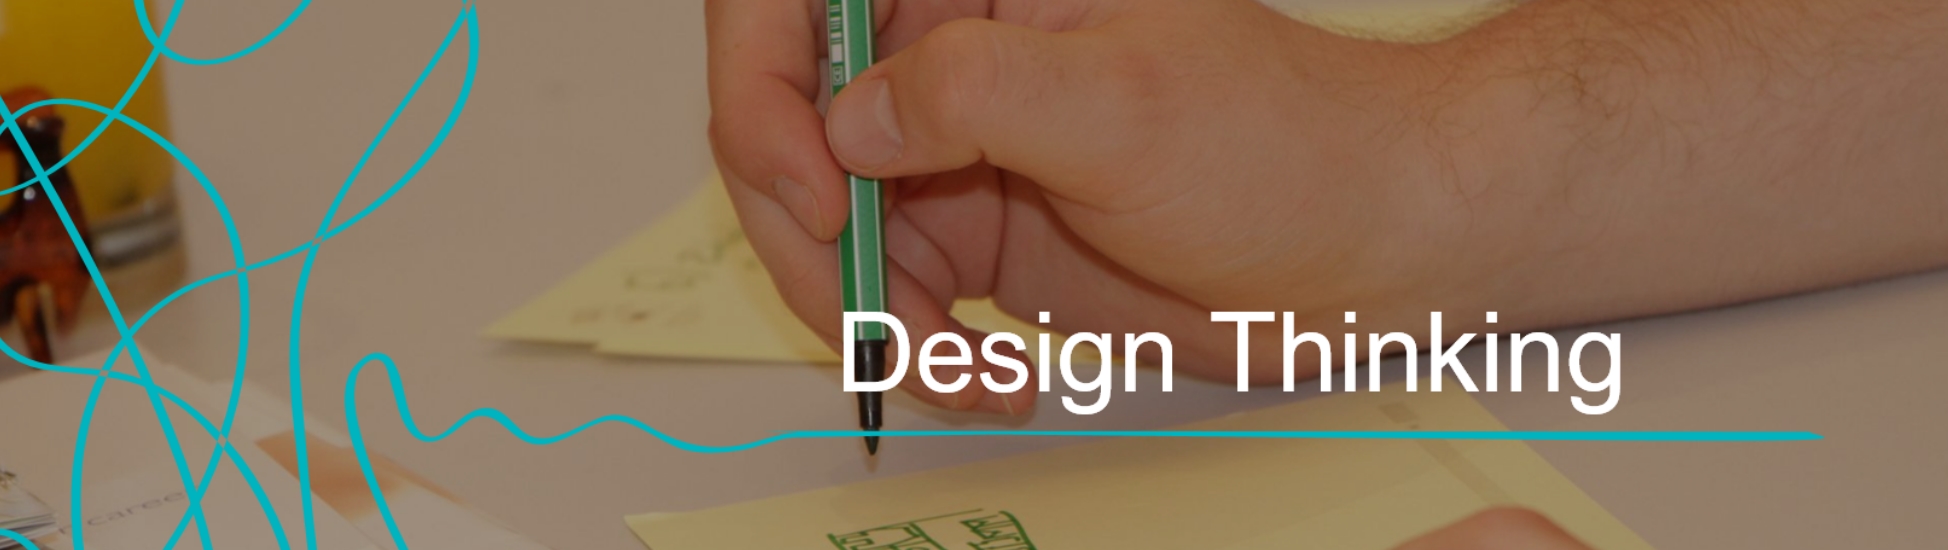 blog_design_thinking_bei_gemeinden